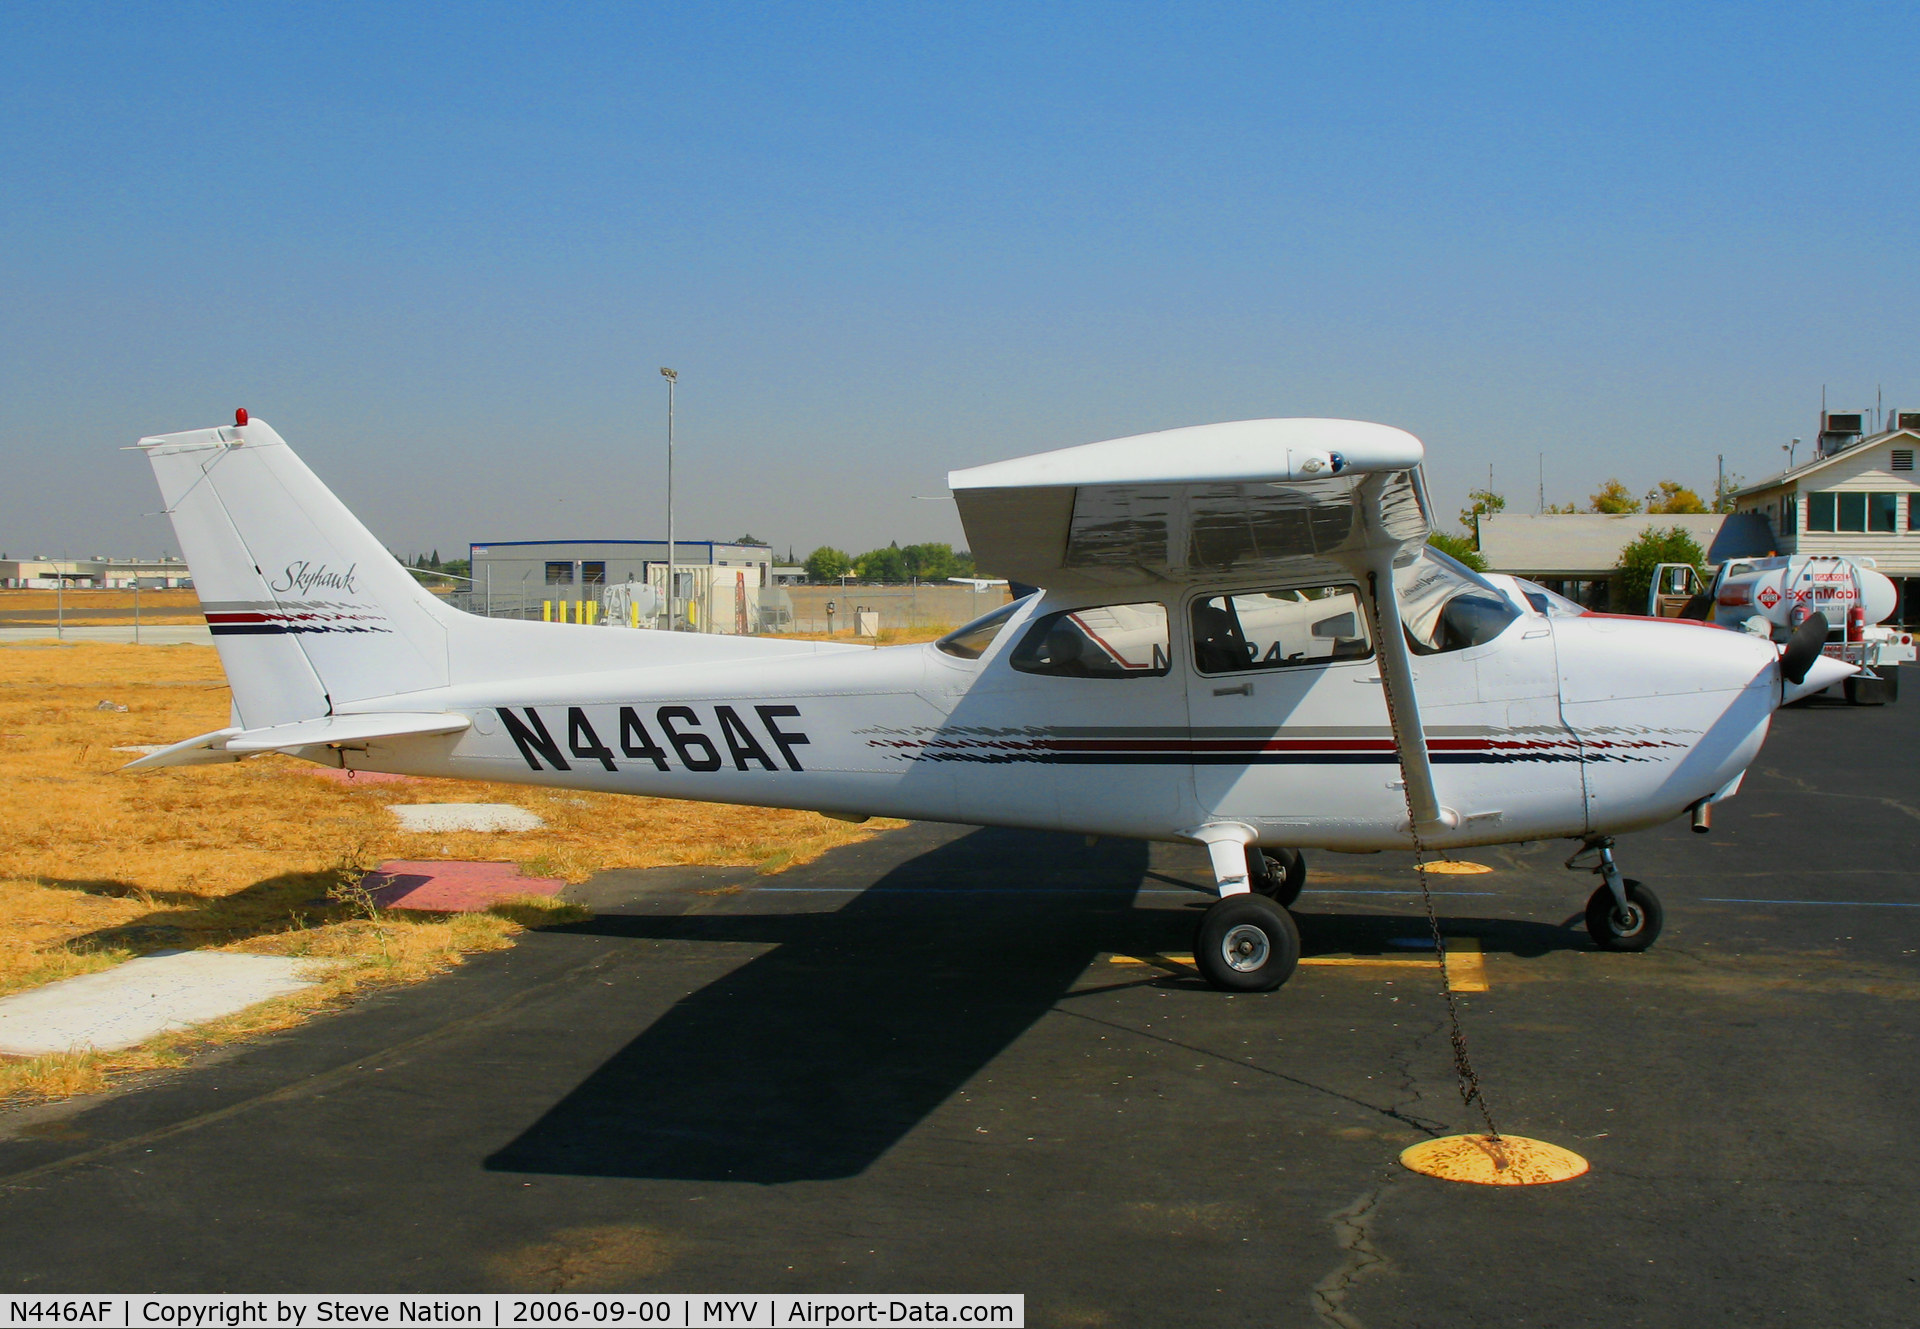 N446AF, 1998 Cessna 172R C/N 17280446, Beale AFB Aero Club 1998 Cessna 172R @ Yuba County Airport (Marysville), CA